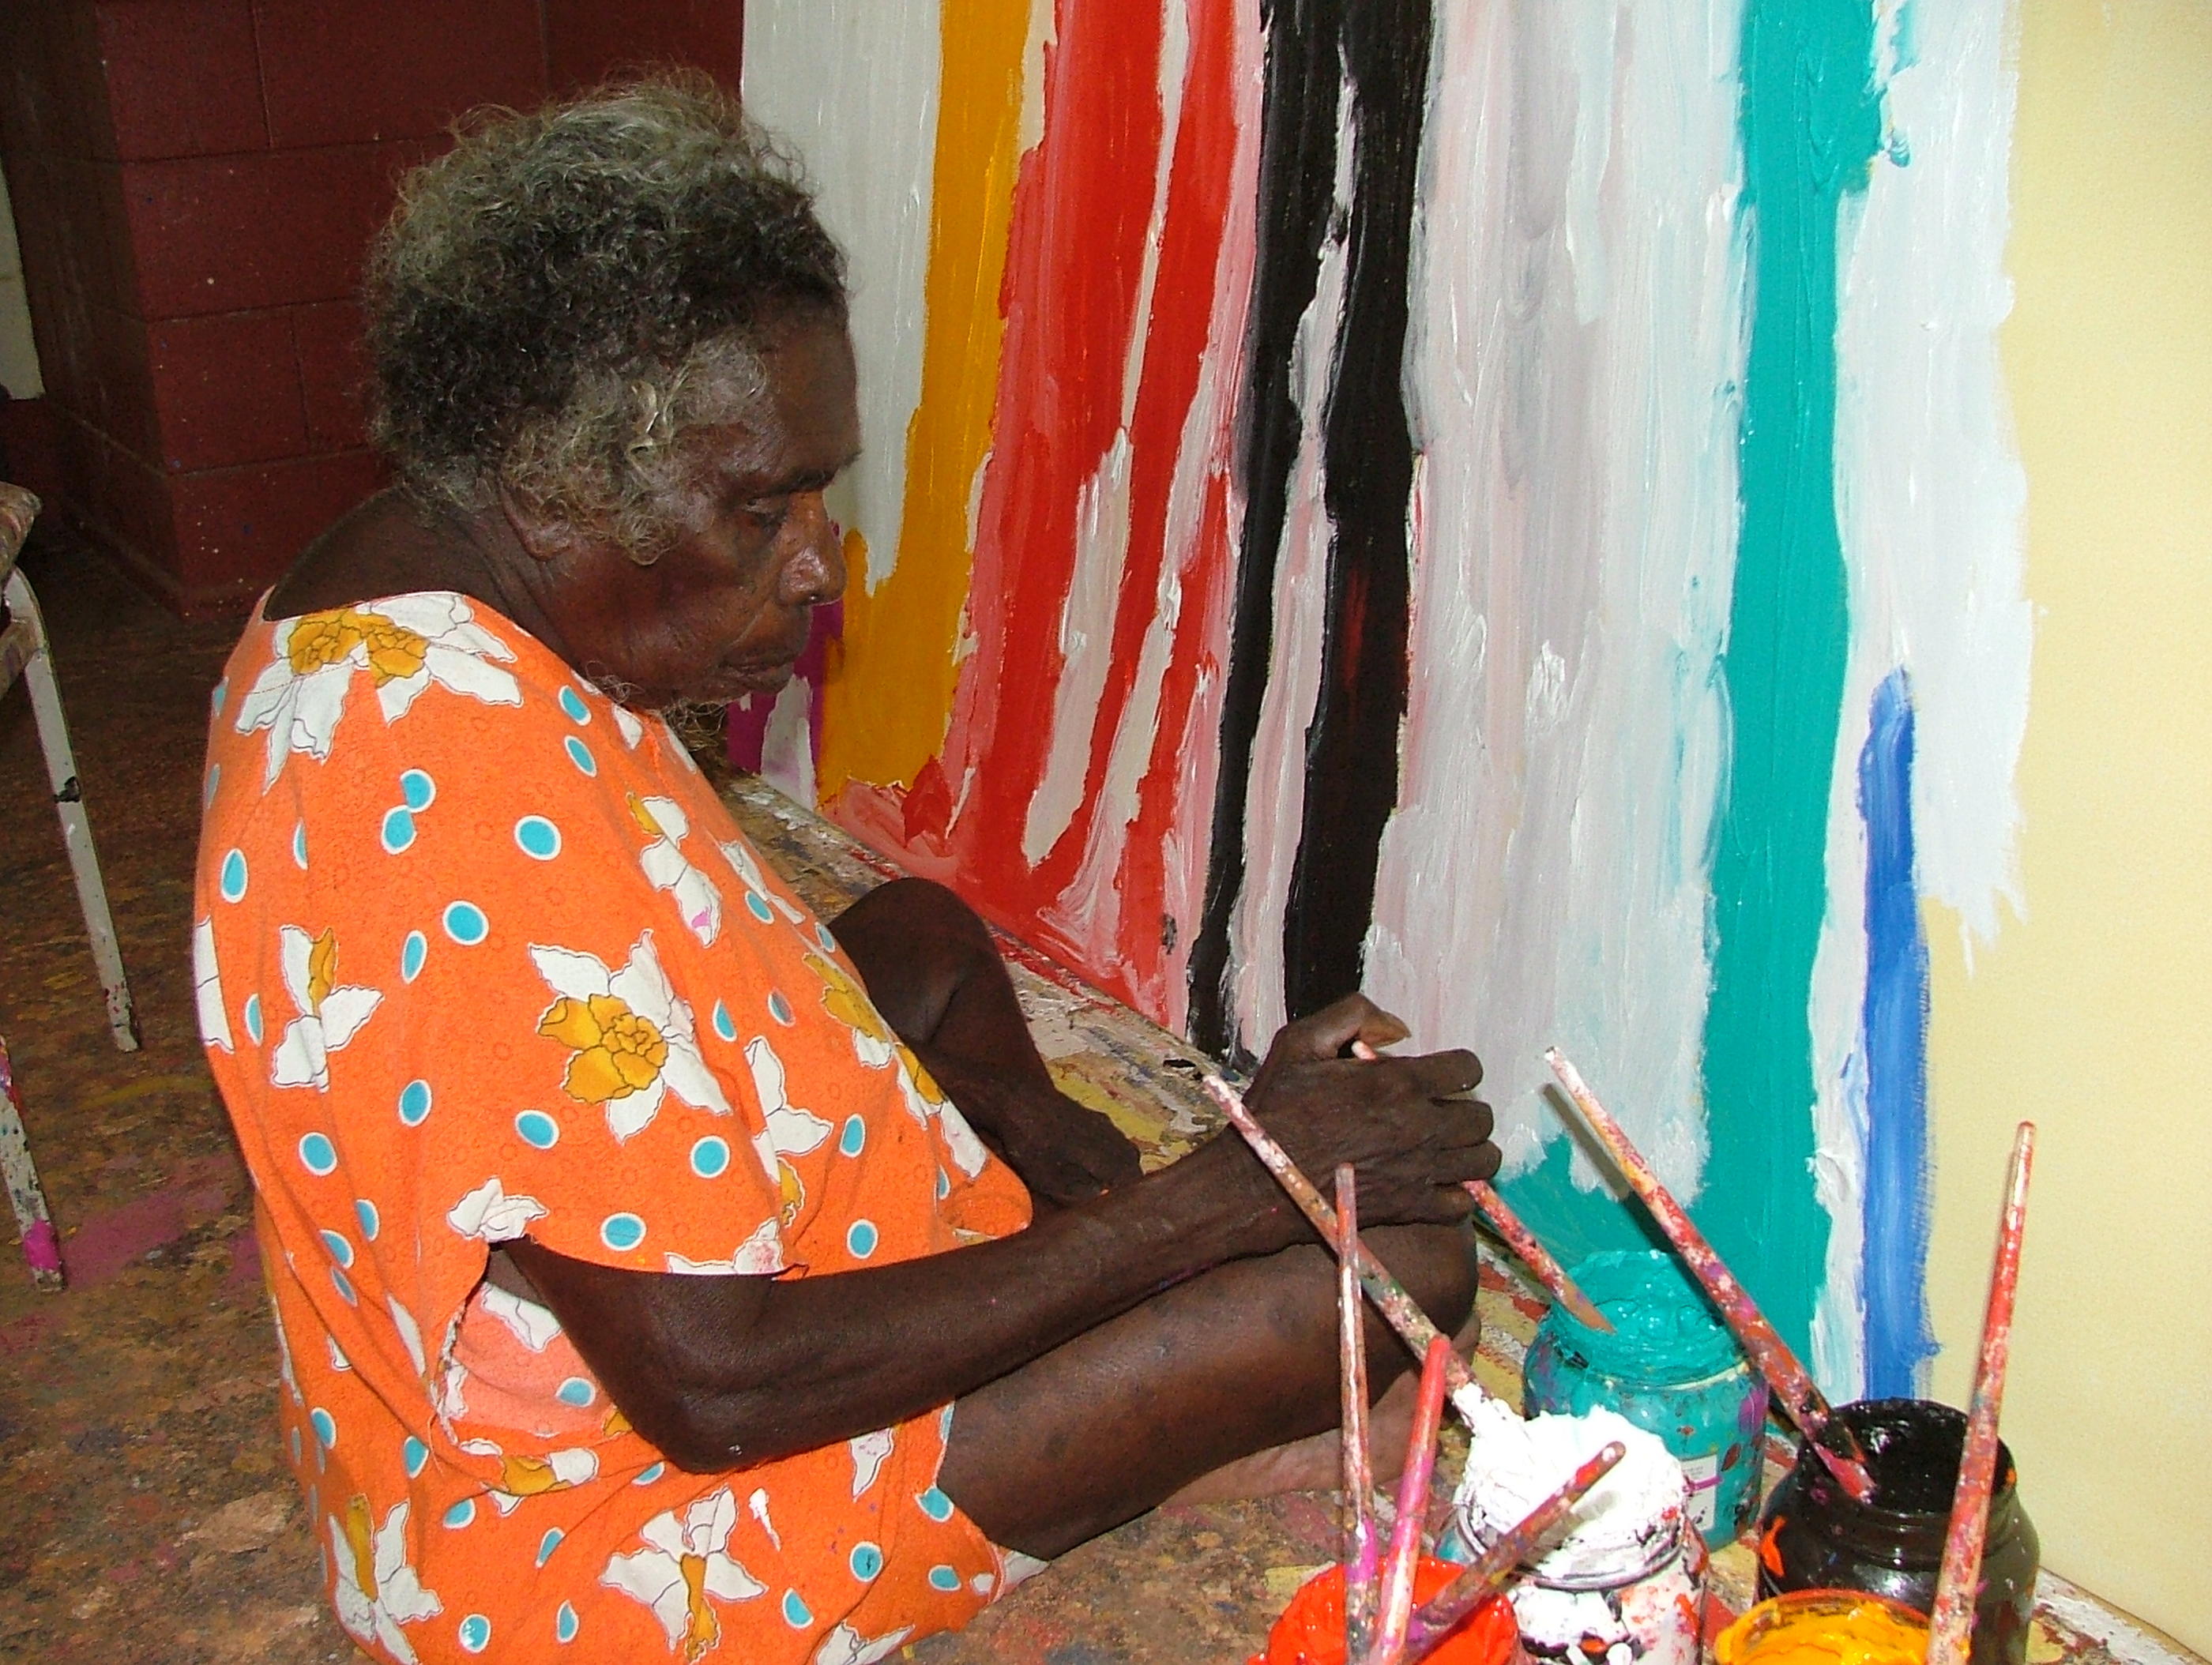 Sally Gabori, Mirdidingkinghati Juwarnda en dialecte aborigène, a fréquenté le Mornington Island Arts and Crafts Centre. Elle a rencontré le succès très rapidement. The Estate of Sally Gabori/Inge Cooper.